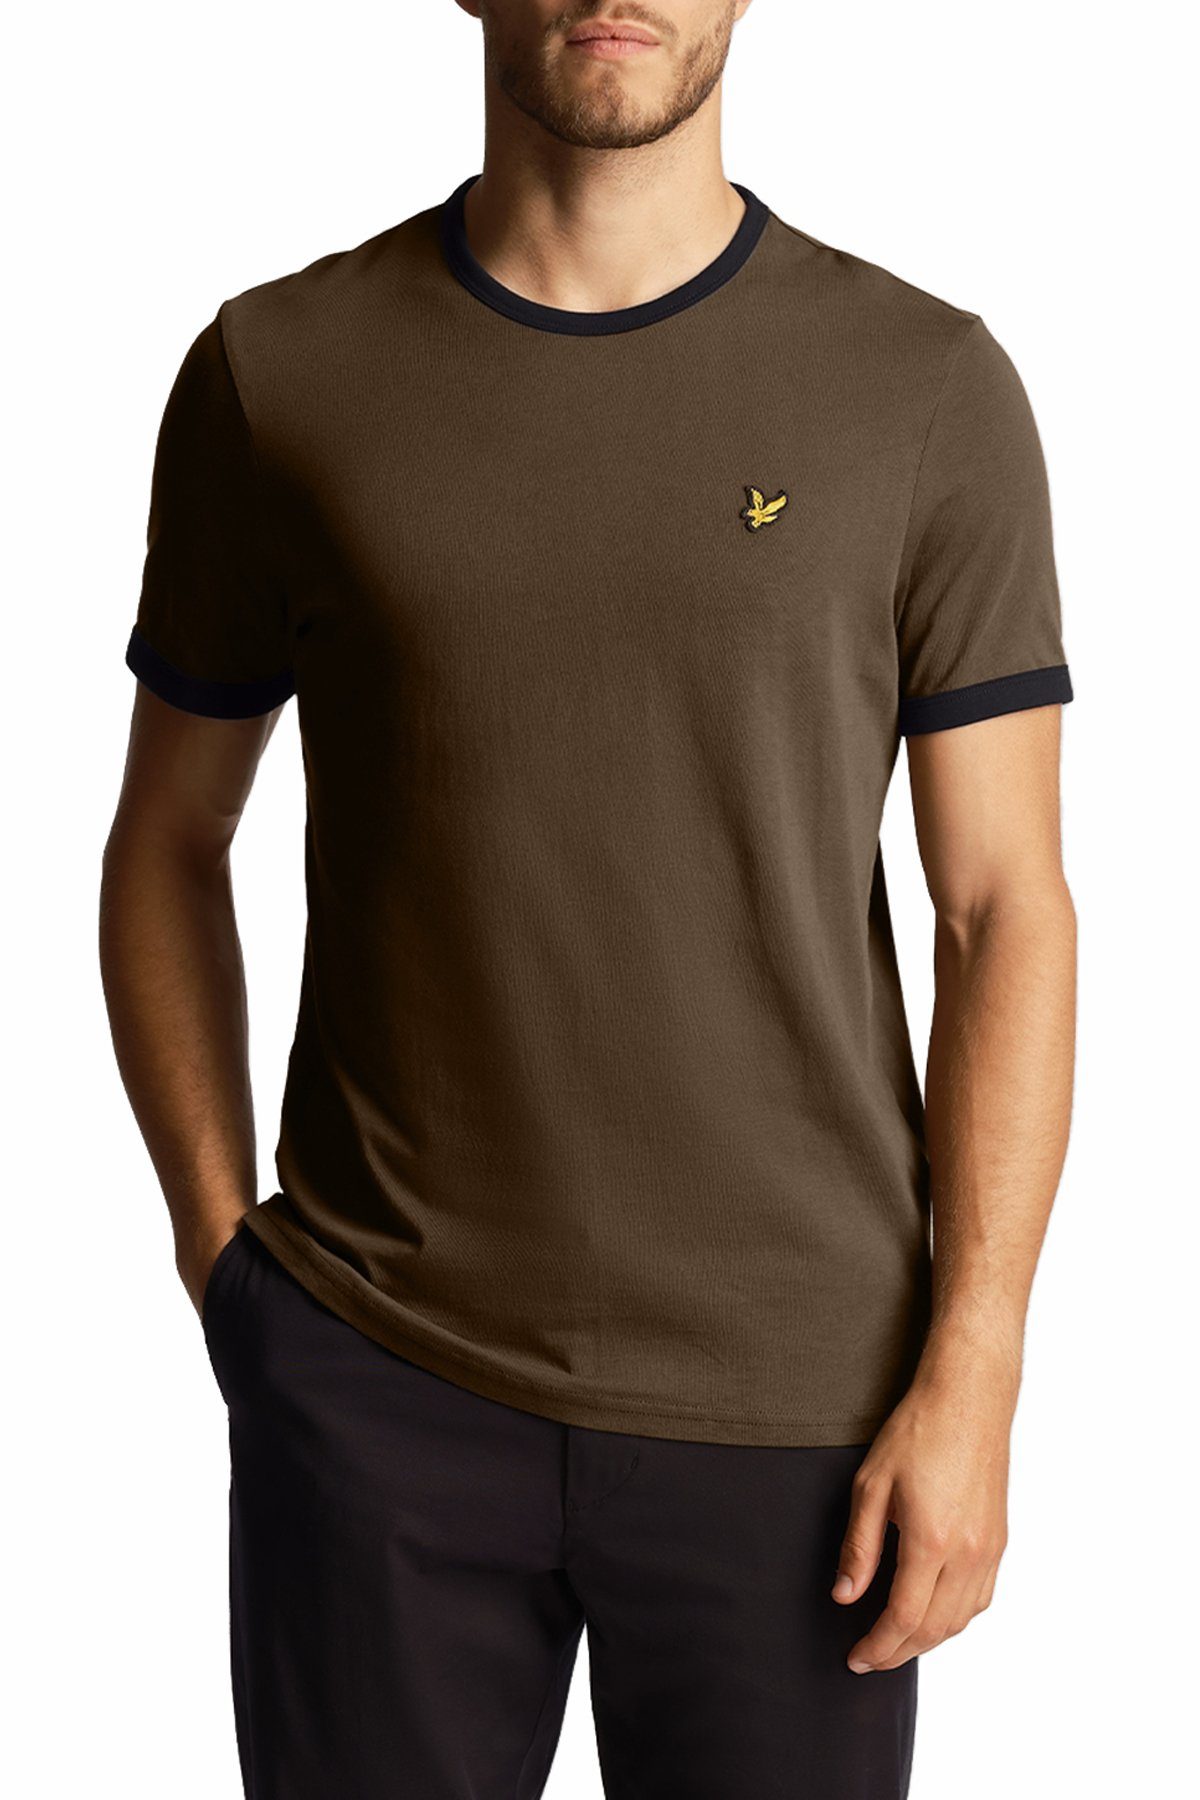 Lyle & Scott T-Shirt Mit Kontrastierender Zierleiste Oliv/Tiefschwarz